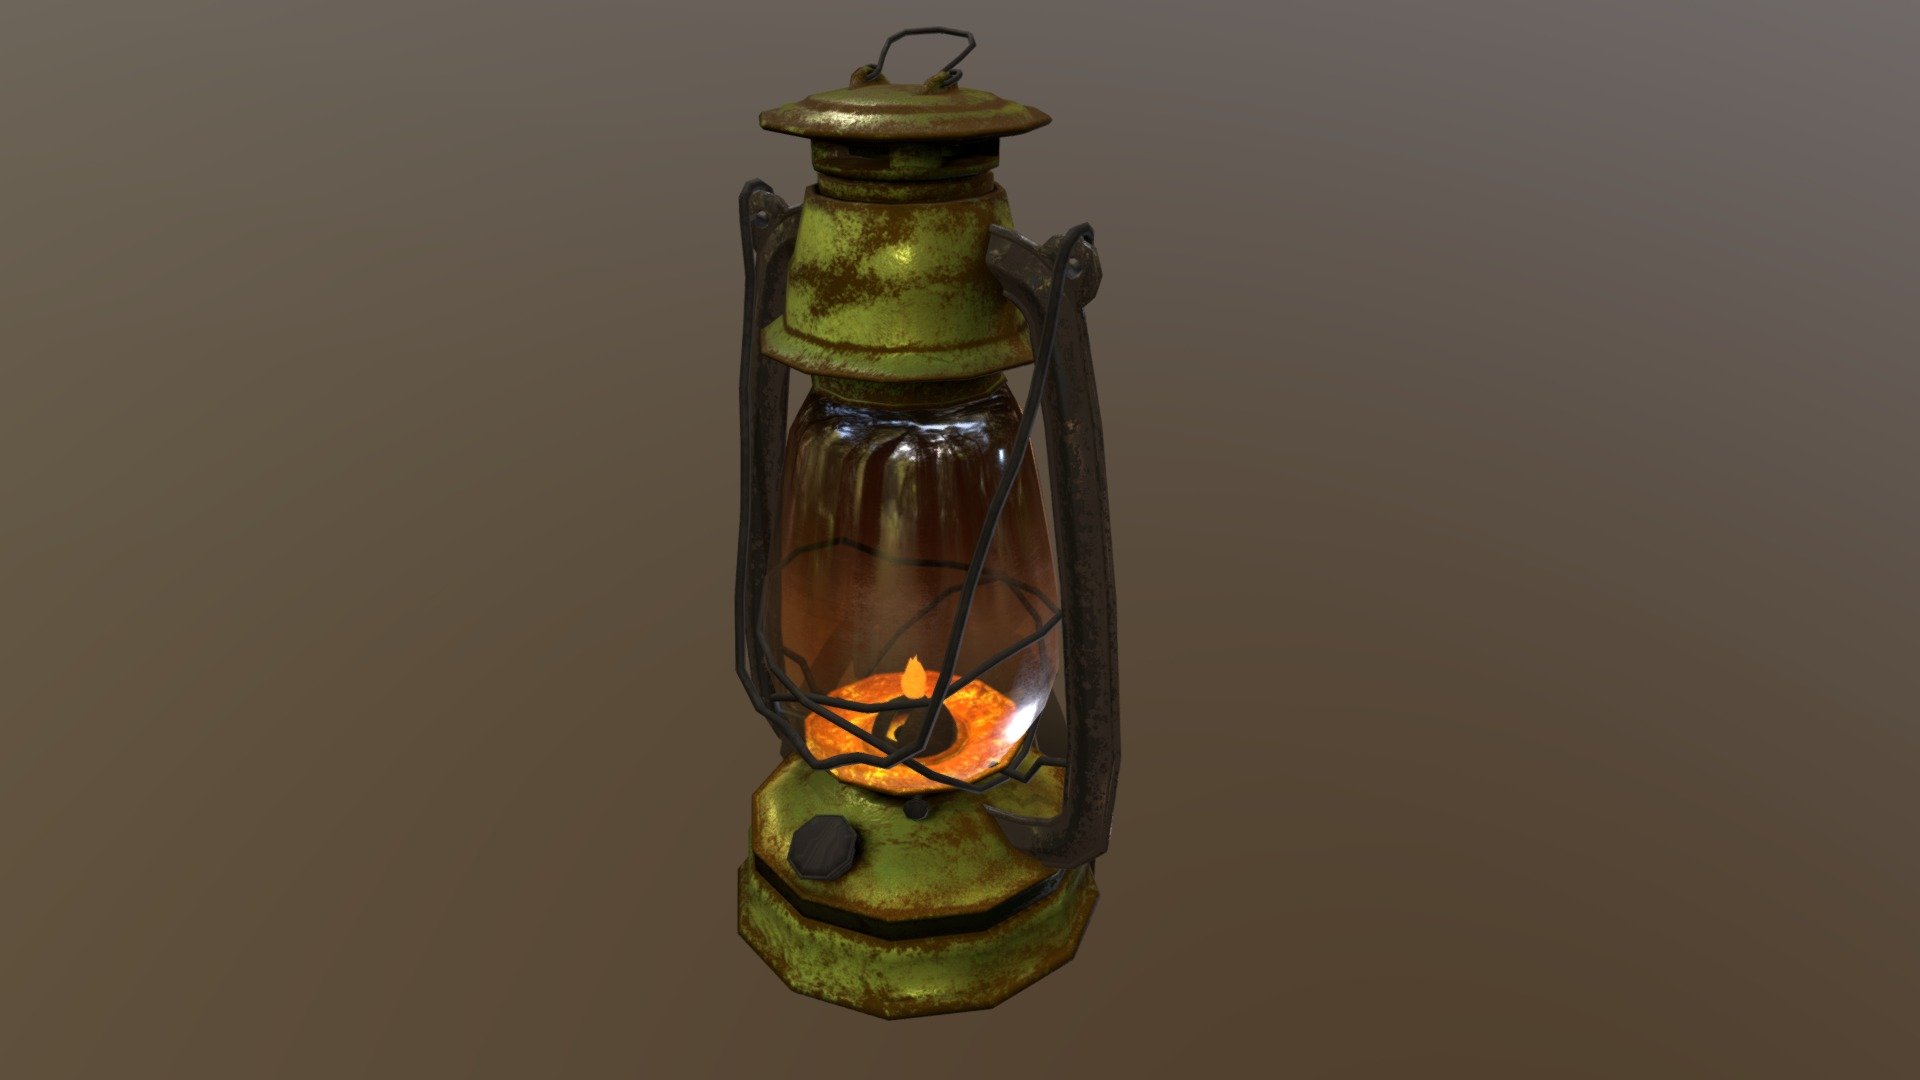 Green Low-Poly Kerosene Lamp made on Blender 2.91 and rendered with cycles - Low-poly kerosene lamp - 3D model by dresouza3d 3d model